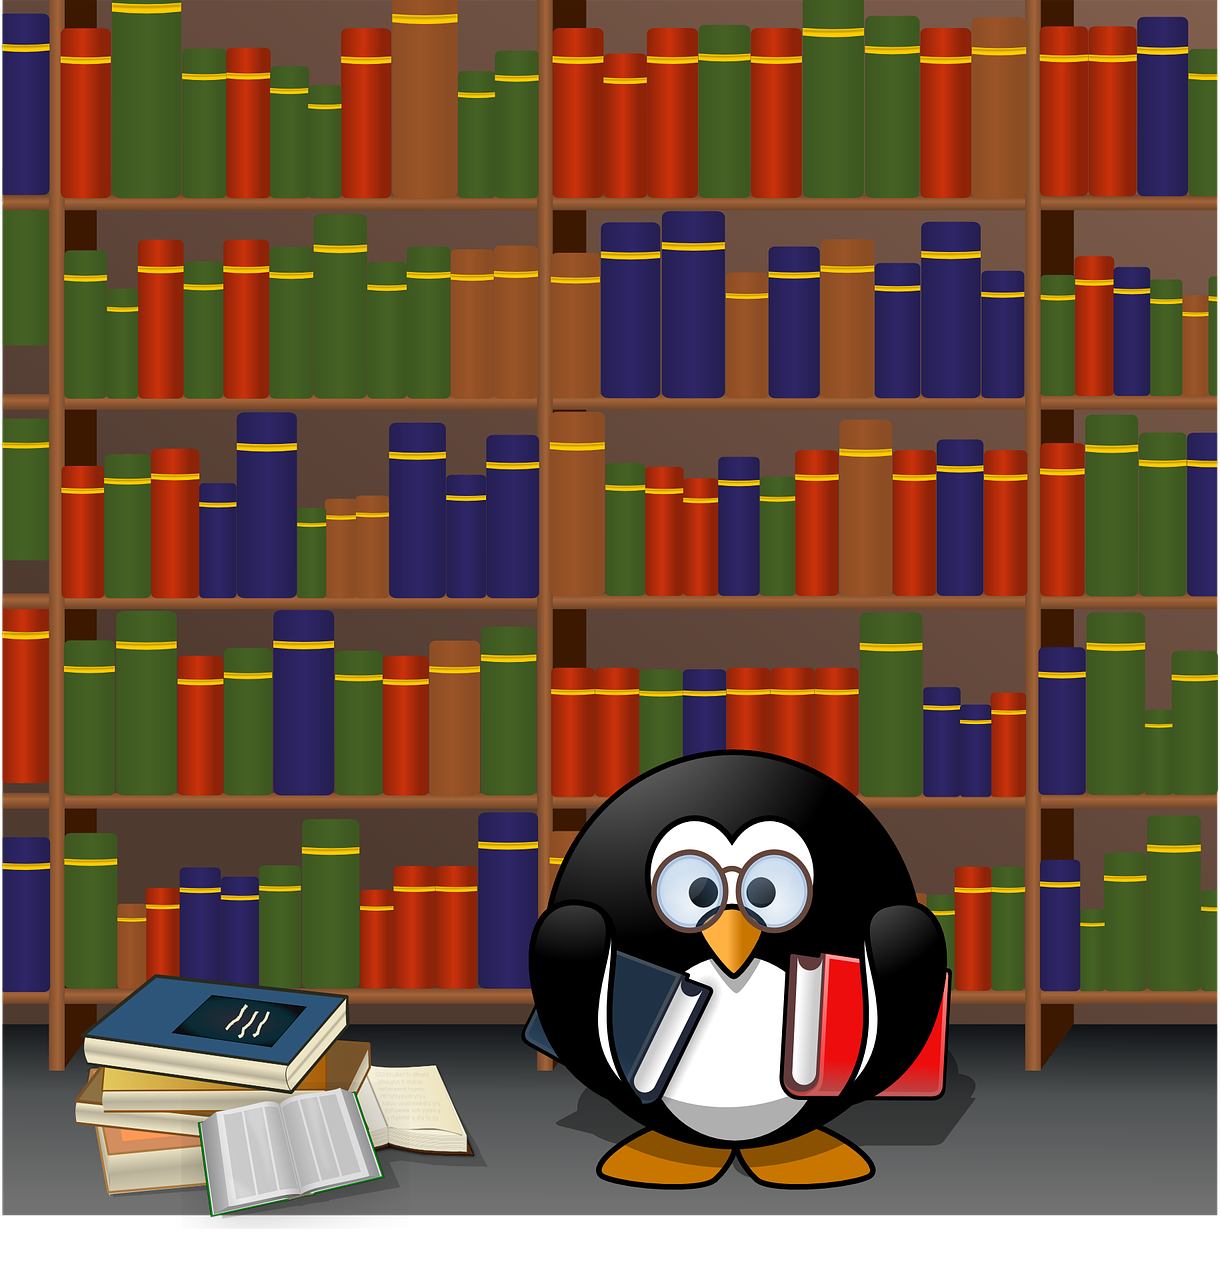 Pingvinas, Knygos, Biblioteka, Geriausiai Parduodamas, Kultūra, Švietimas, Juokinga, Vaizduotė, Literatūra, Laukinė Gamta